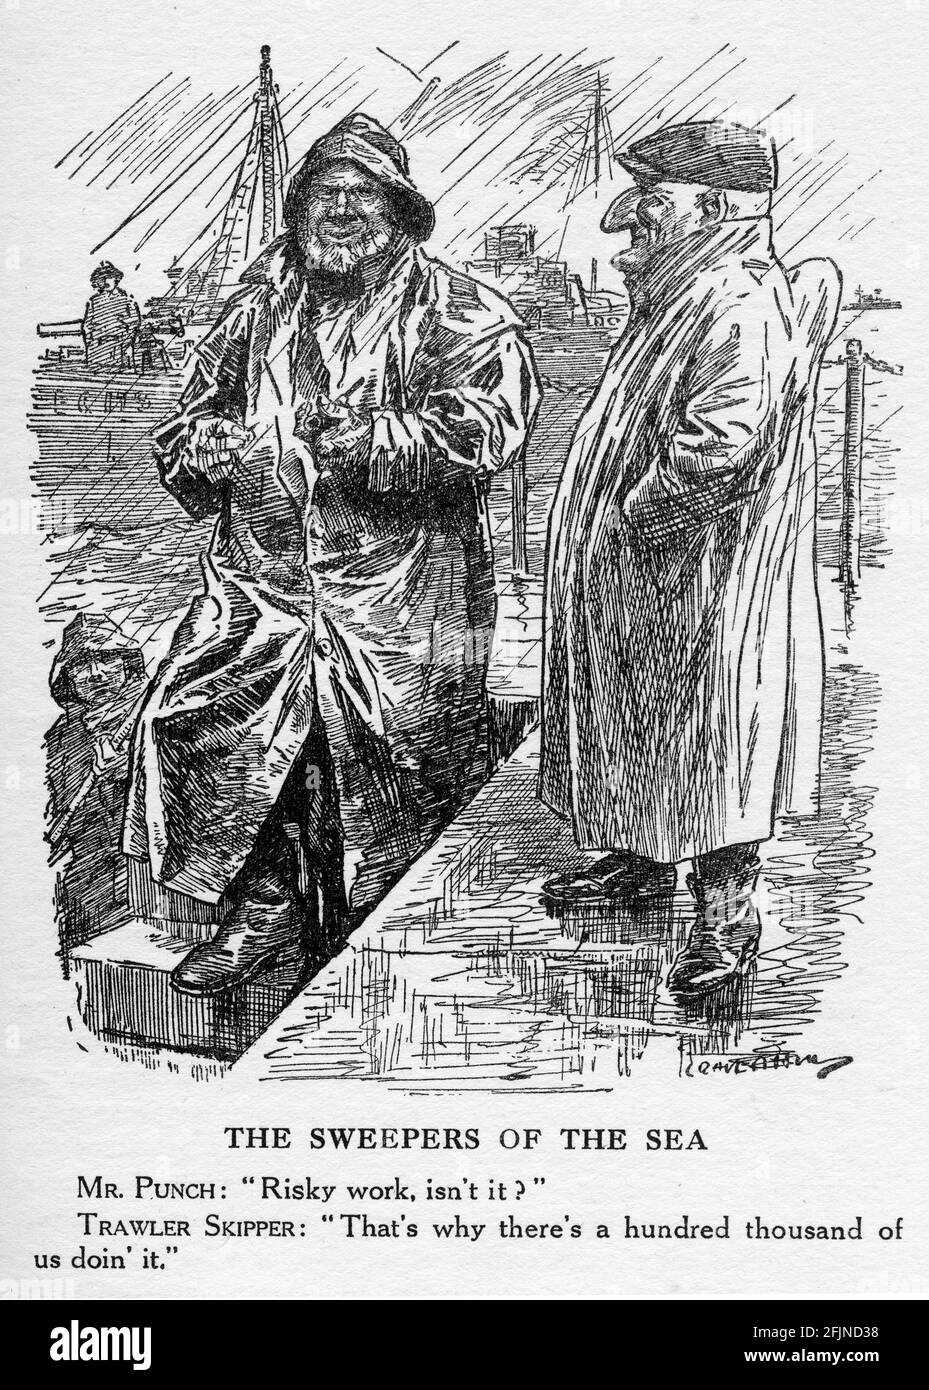 Gravur eines Trawler-Skippers, der erklärt, wie bereit er ist, während des Ersten Weltkriegs nach Minen zu fegen. Aus dem Magazin Punch. Stockfoto